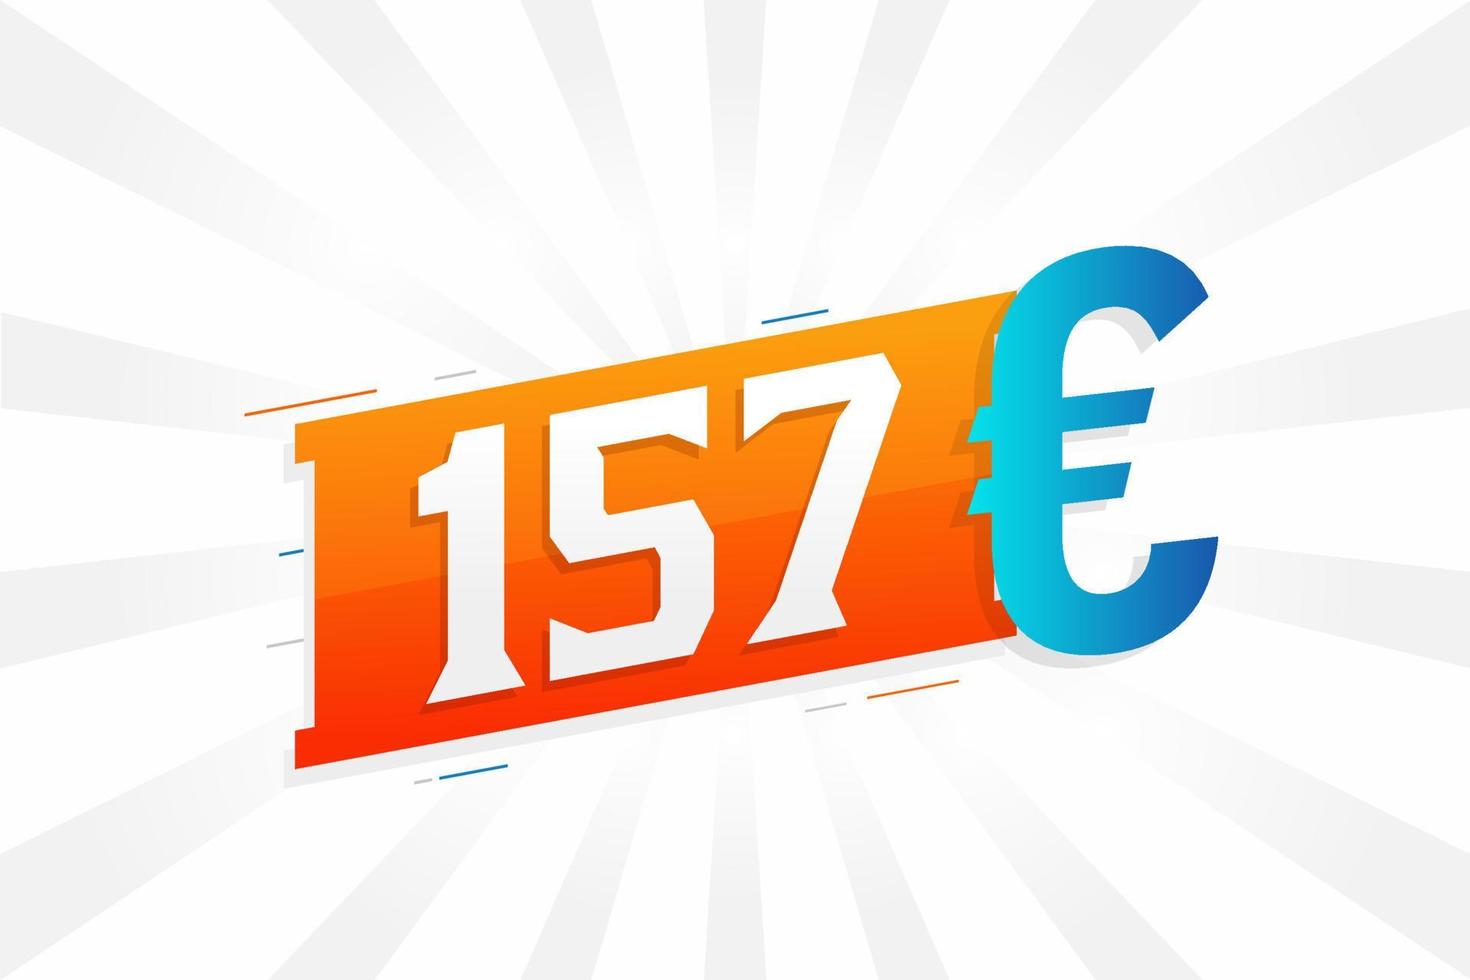 Symbole de texte vectoriel de devise de 157 euros. 157 euros vecteur de stock d'argent de l'union européenne